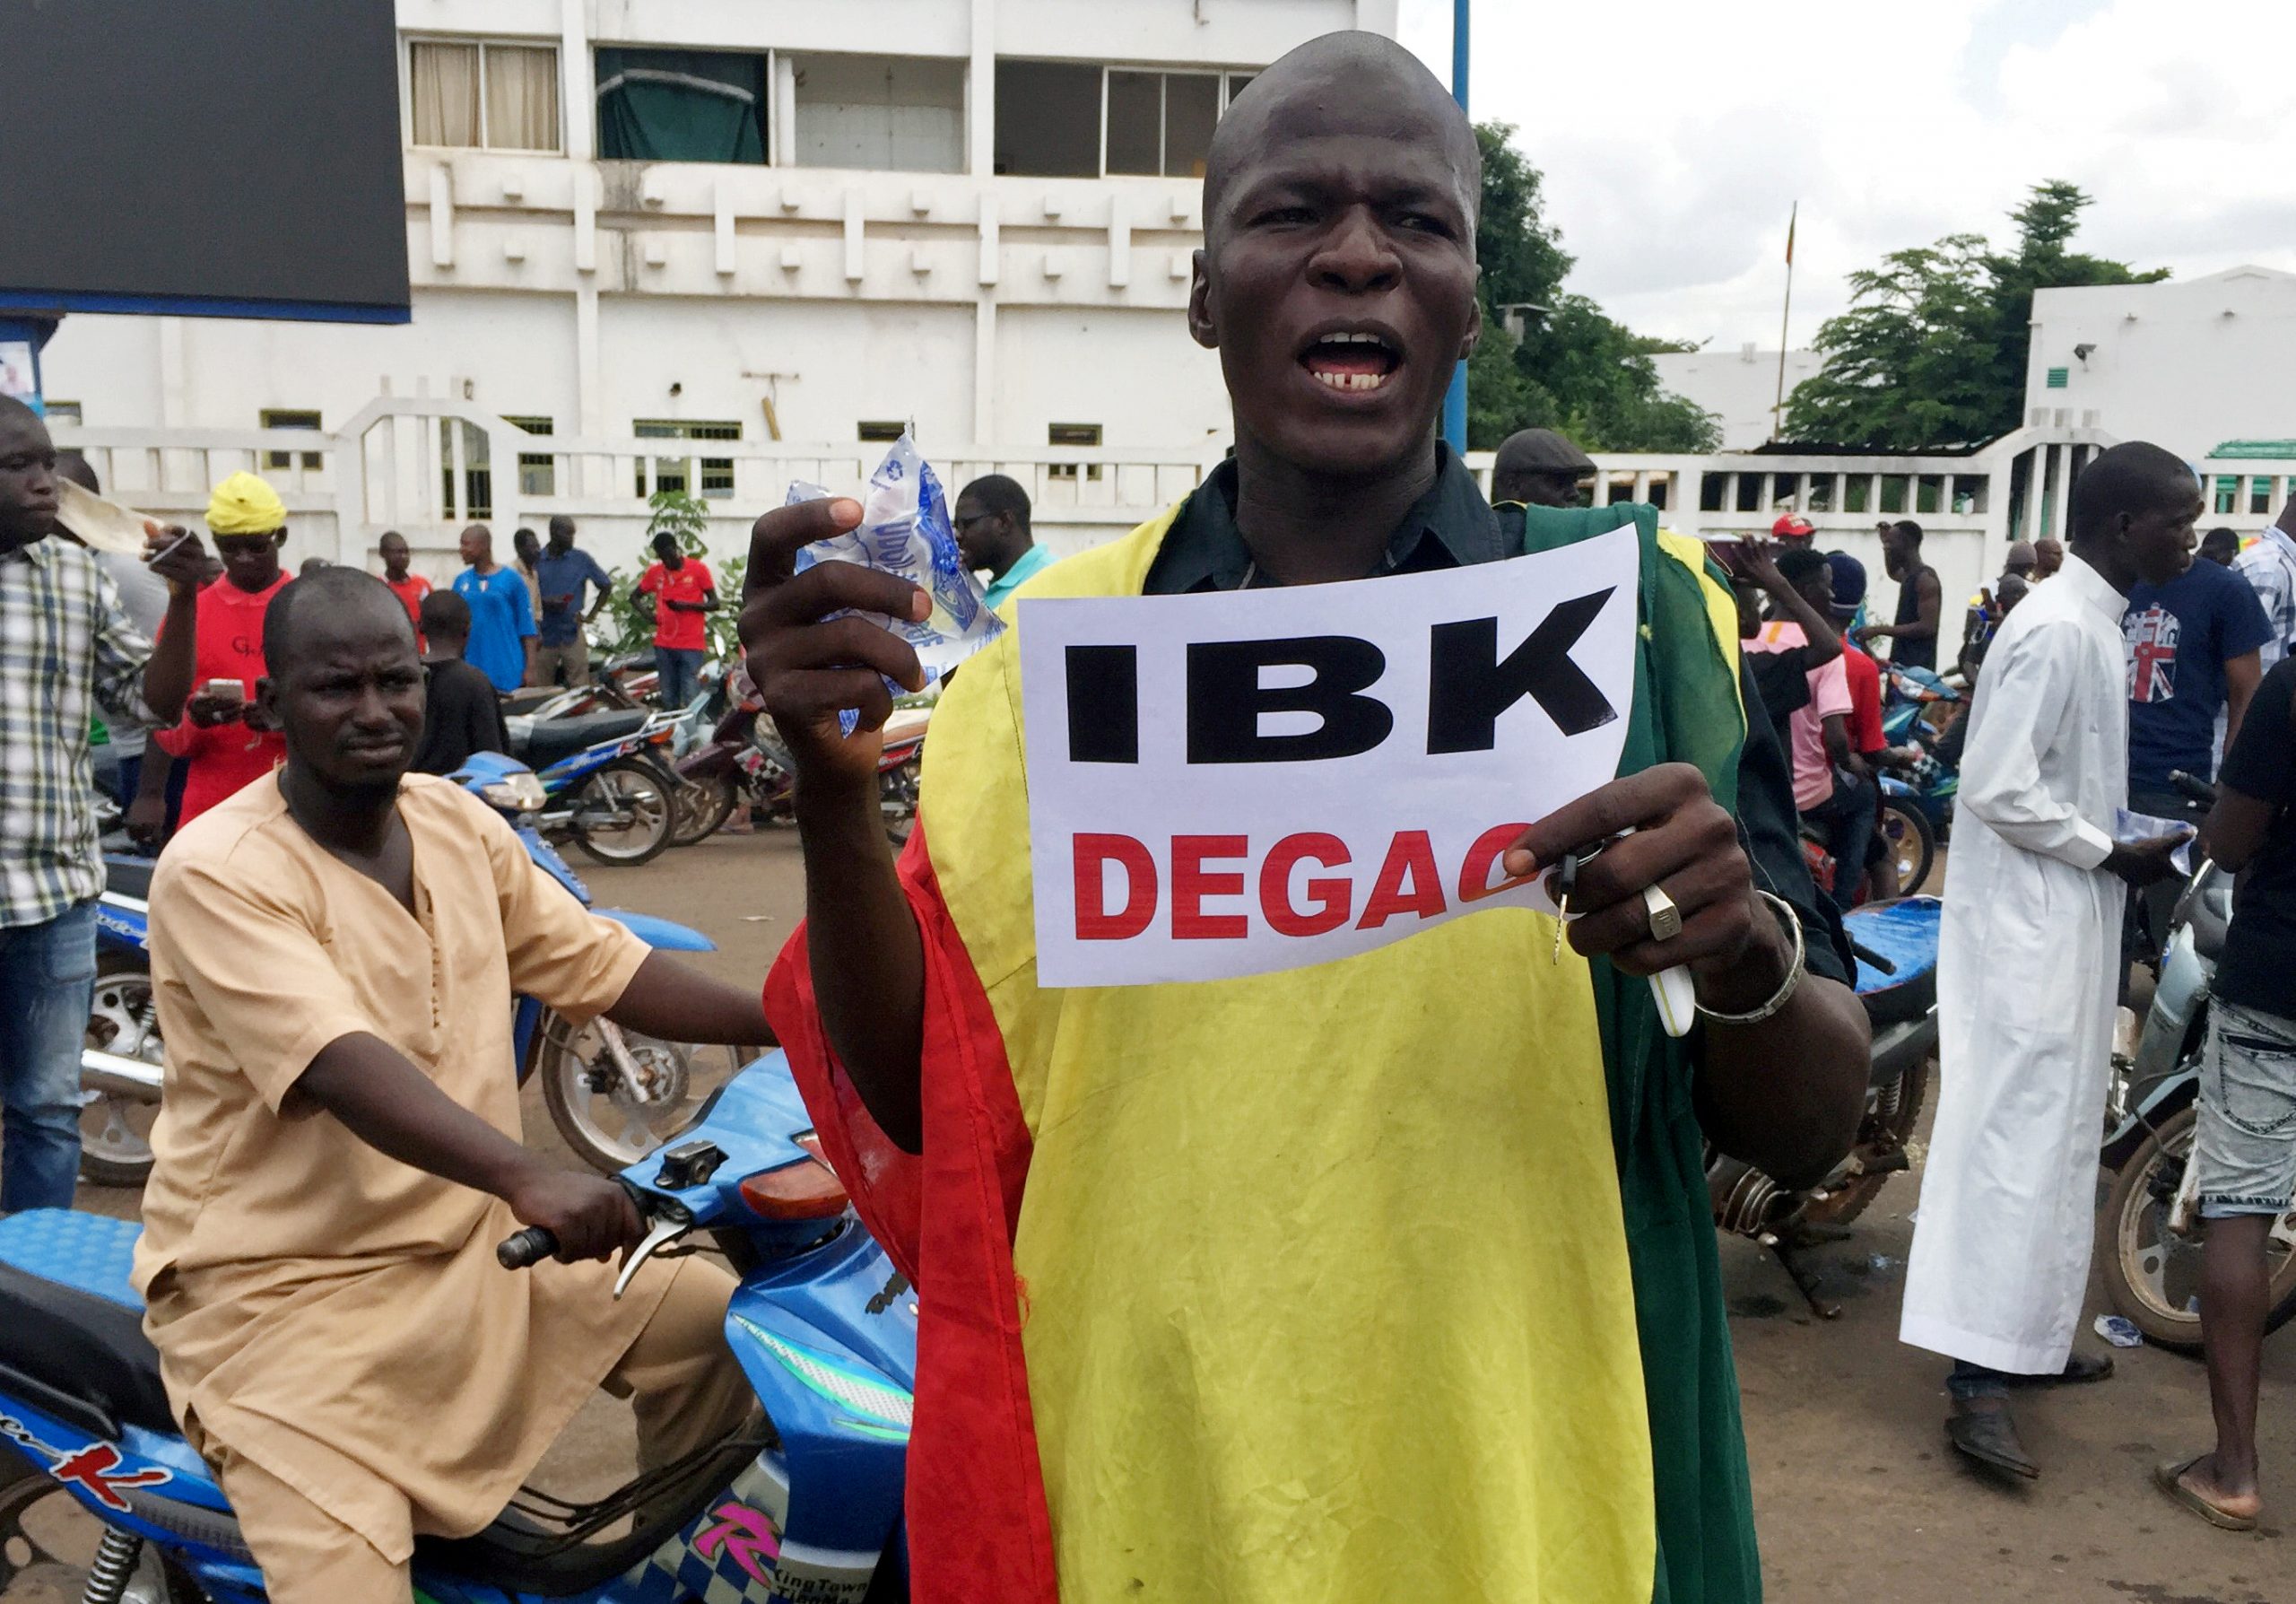 Des manifestants anti-IBK ont convergé sur la place de l'Indépendance, ce mardi 18 août, quelques heures après une mutinerie dans le camps militaire de Kati, près de Bamako.